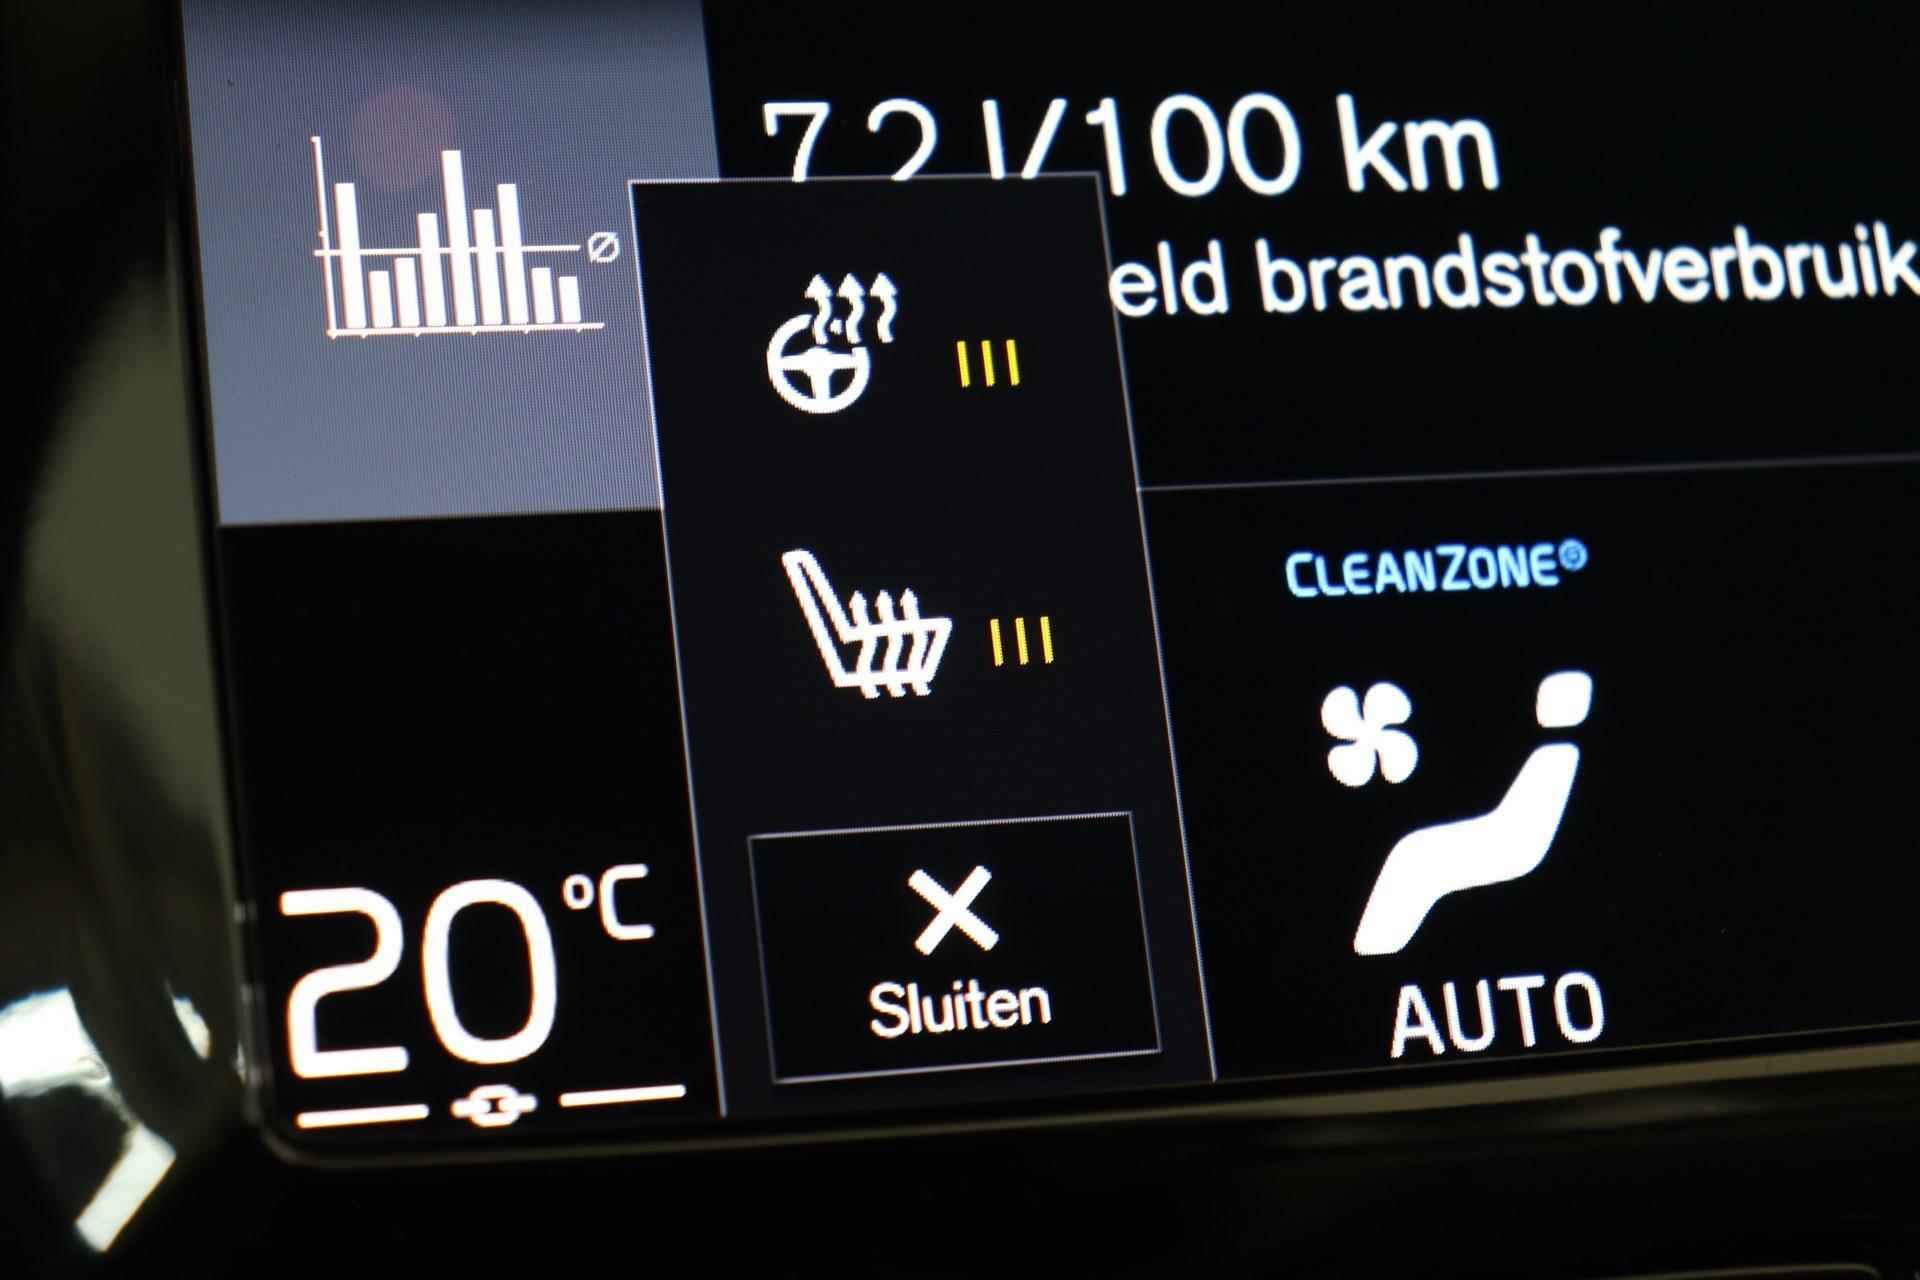 Volvo XC90 T8 Recharge AWD R-Design - IntelliSafe Assist & Surround - Harman/Kardon audio - Adaptieve LED koplampen - Parkeercamera achter - Elektr. bedienb. voorstoelen met geheugen - Climate-Control 4-zone - Apple Carplay & Android Auto - Parkeersensoren voor & achter - Verwarmde voorstoelen & stuur - Draadloze tel. lader - Extra getint glas - 20' LMV - 15/29